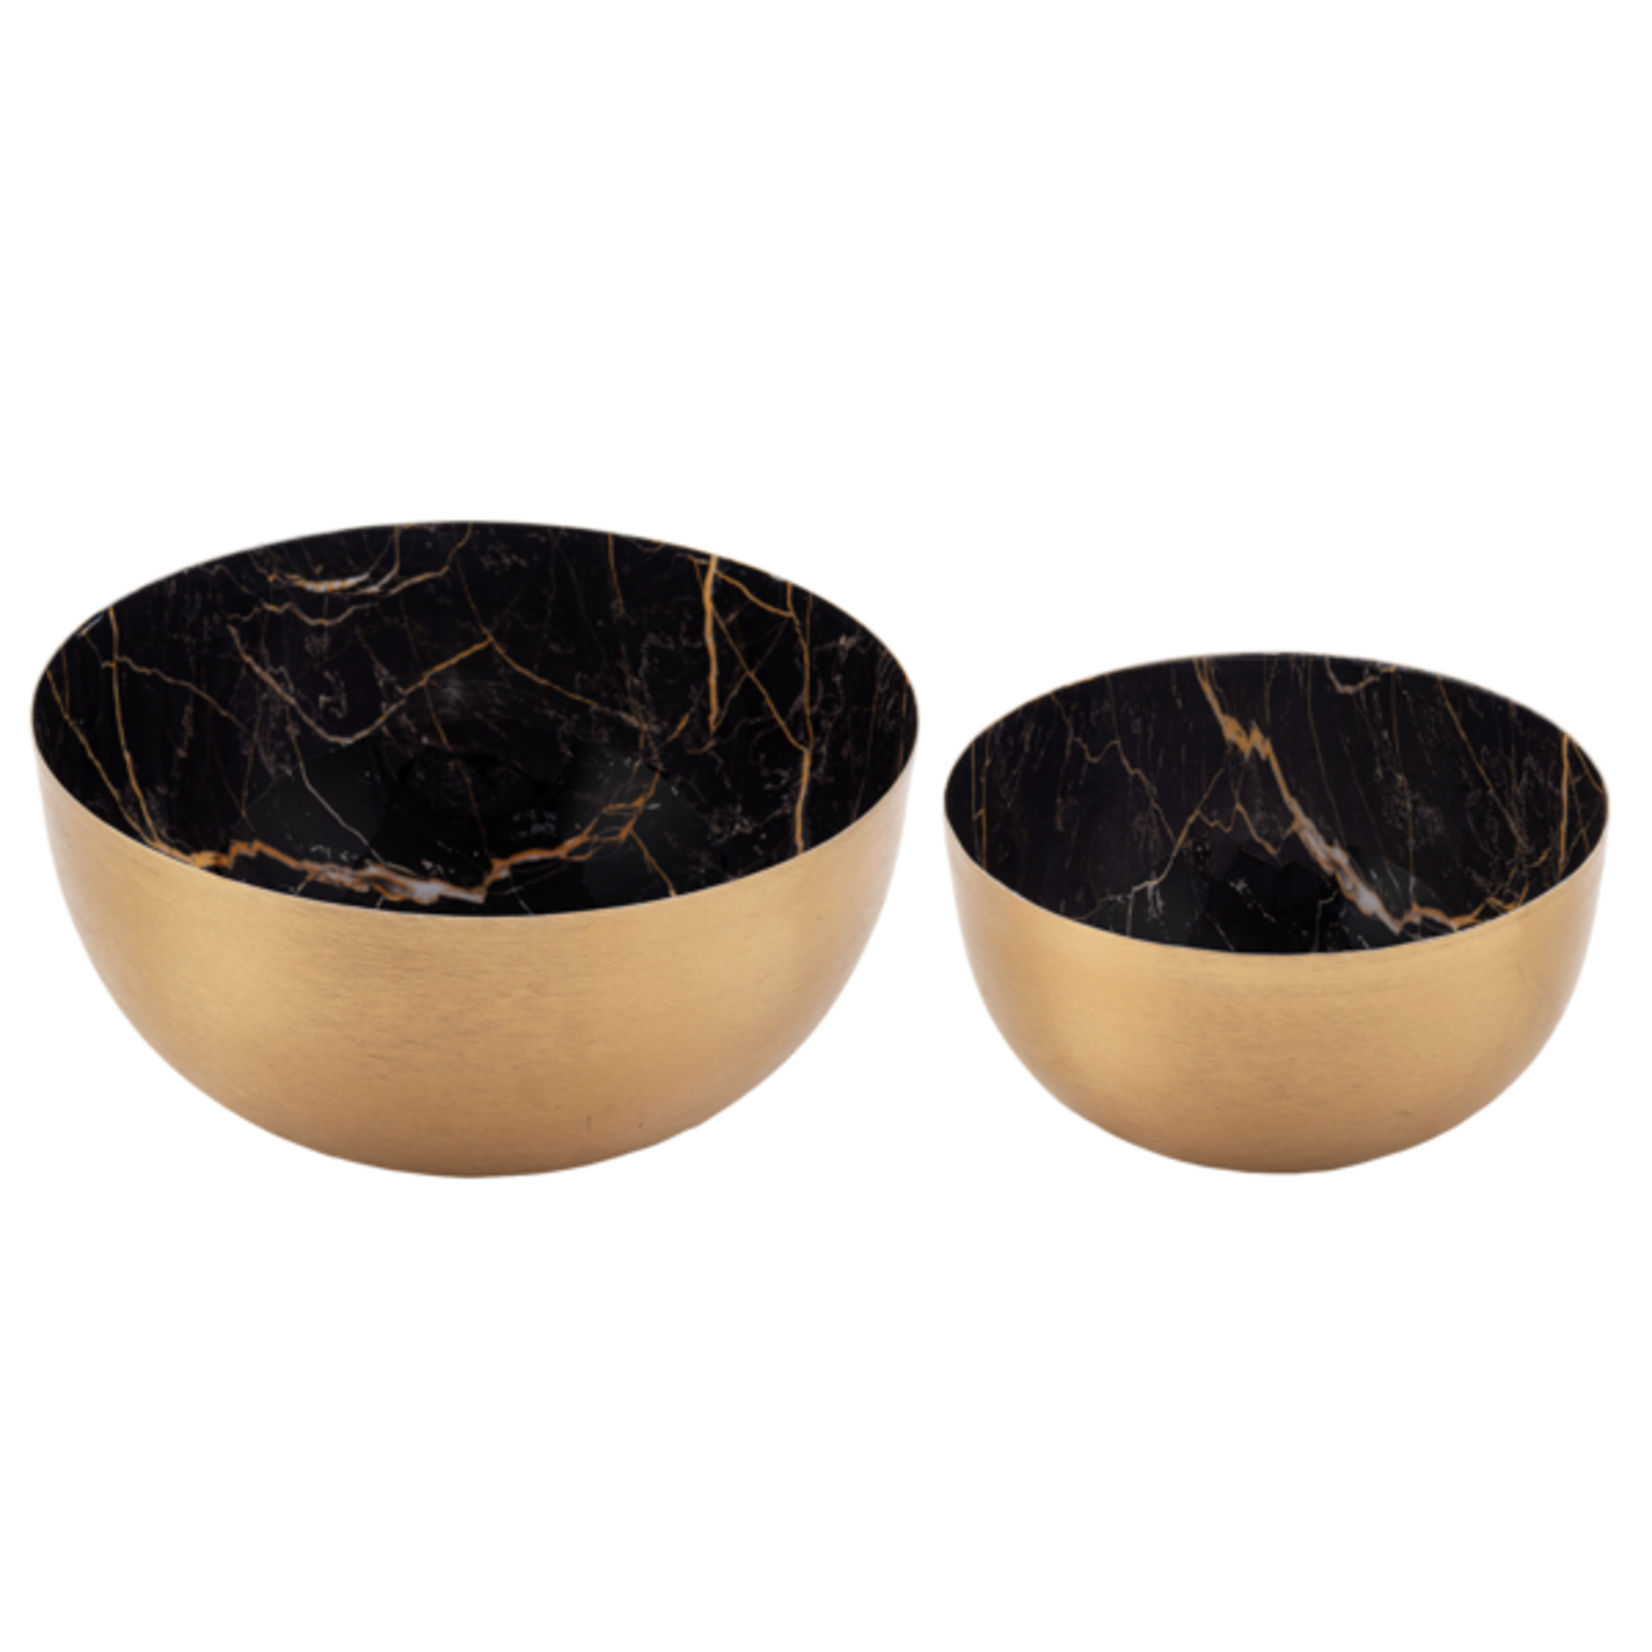 Black & Gold Faux Marble Bowl - 2 piece Set